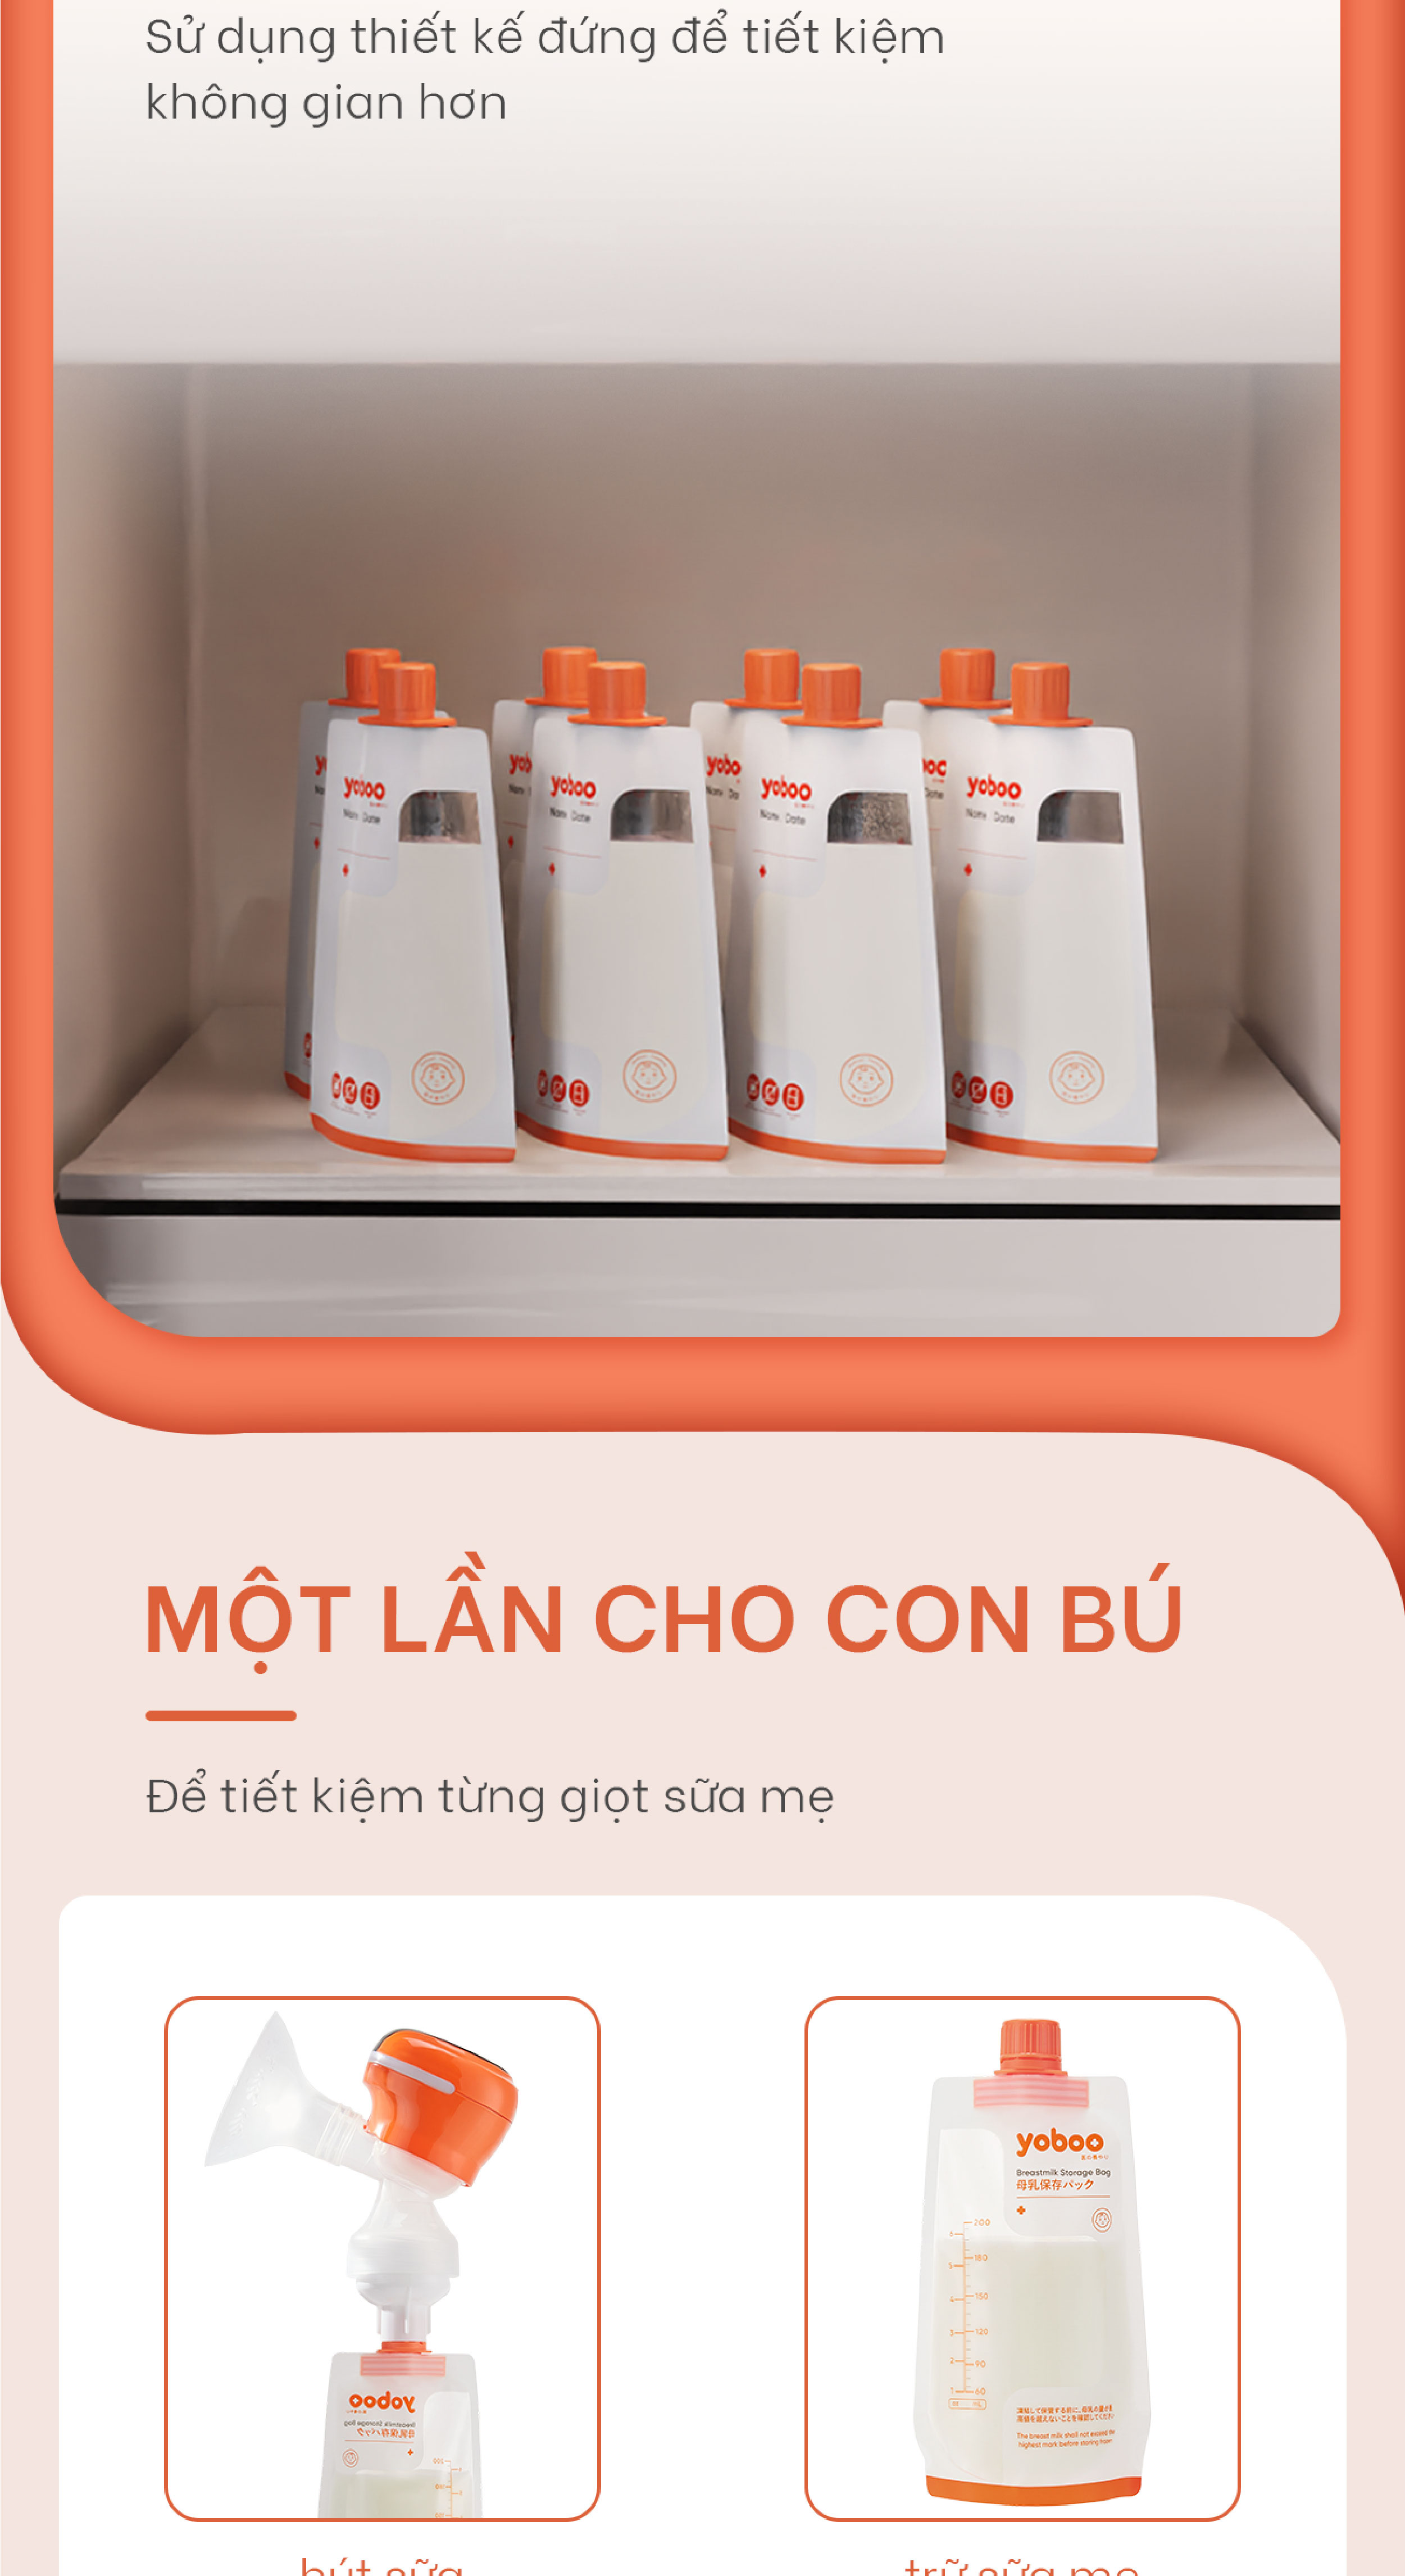 hộp 30 túi trữ sữa mẹ nút vặn yoboo 200ml an toàn không chứa bpa không độc hại chất lượng nhật bản 5